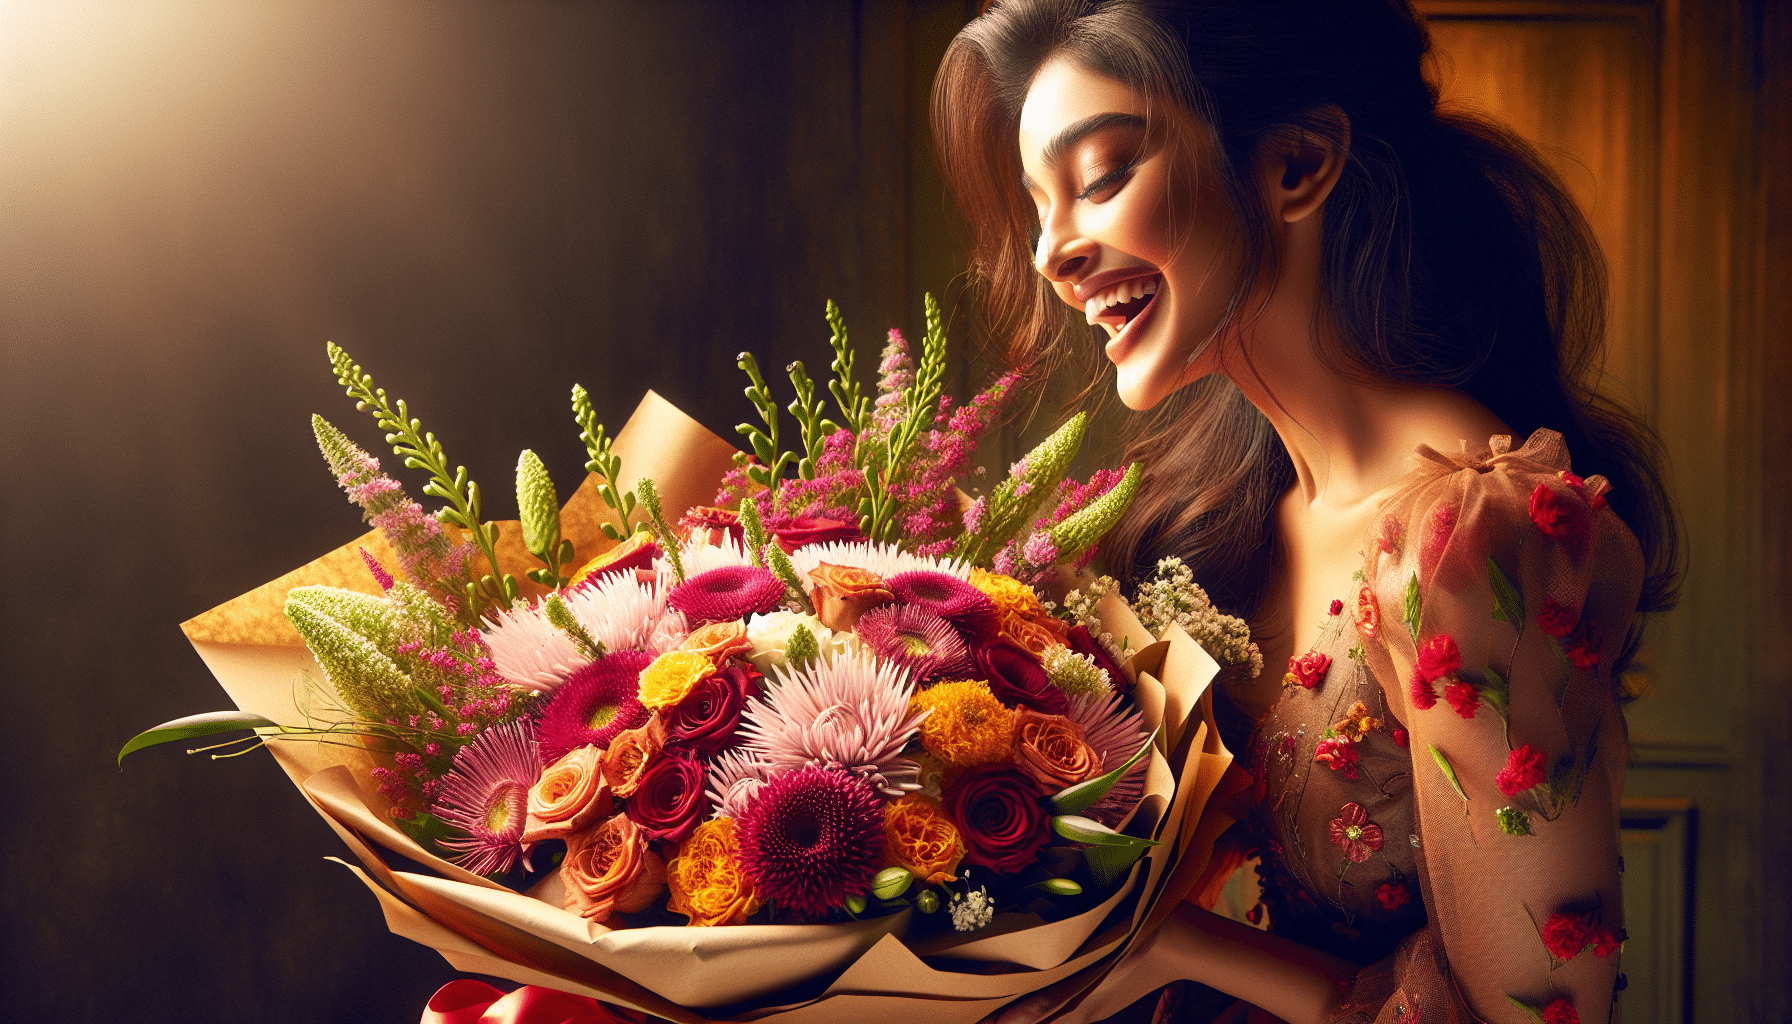 découvrez pourquoi rêver de recevoir un bouquet de fleurs peut symboliser la joie, la beauté et l'amour. trouvez les significations des différentes fleurs et comment elles peuvent influencer nos émotions.